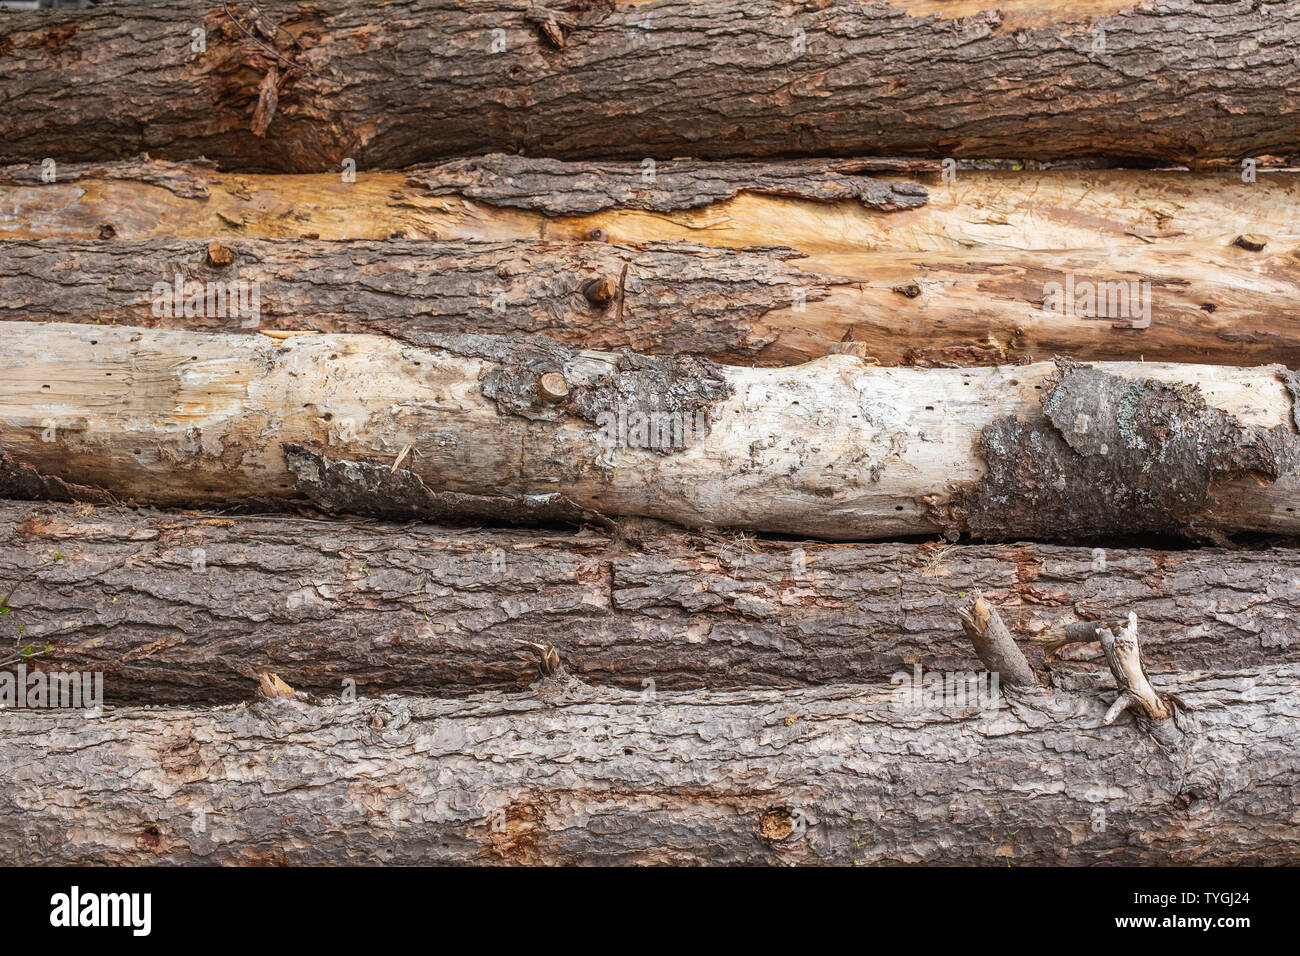 Texture gỗ: Cùng khám phá những hình ảnh texture gỗ đẹp tuyệt vời, với những chi tiết tinh tế và màu sắc hoàn hảo. Texture gỗ thích hợp cho việc trang trí các sản phẩm từ nội thất đến trang sức, mang lại vẻ đẹp tự nhiên và gần gũi với thiên nhiên. Hãy cùng chiêm ngưỡng những mẫu sản phẩm đẹp lung linh với texture gỗ nhé.